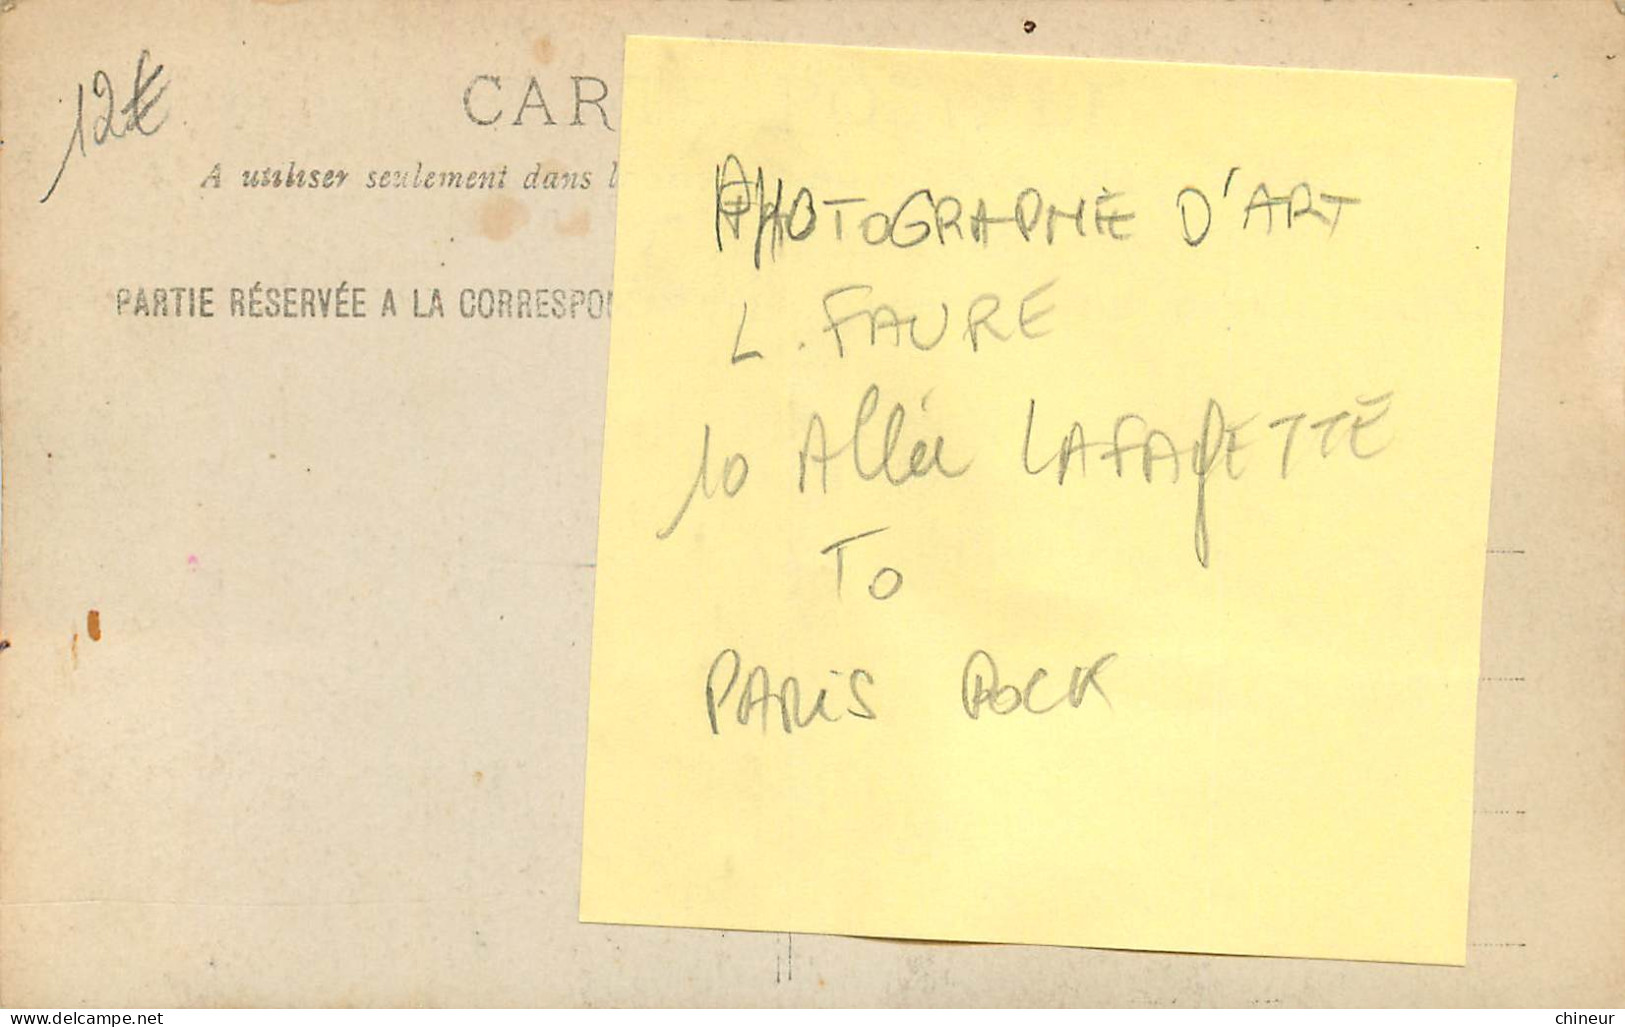 CARTE PHOTO AUTOMOBILE TACOT PHOTOGRAPHE D'ART L.FAURE 10 ALLEE LAFAYETTE PARIS POCK - Taxis & Fiacres